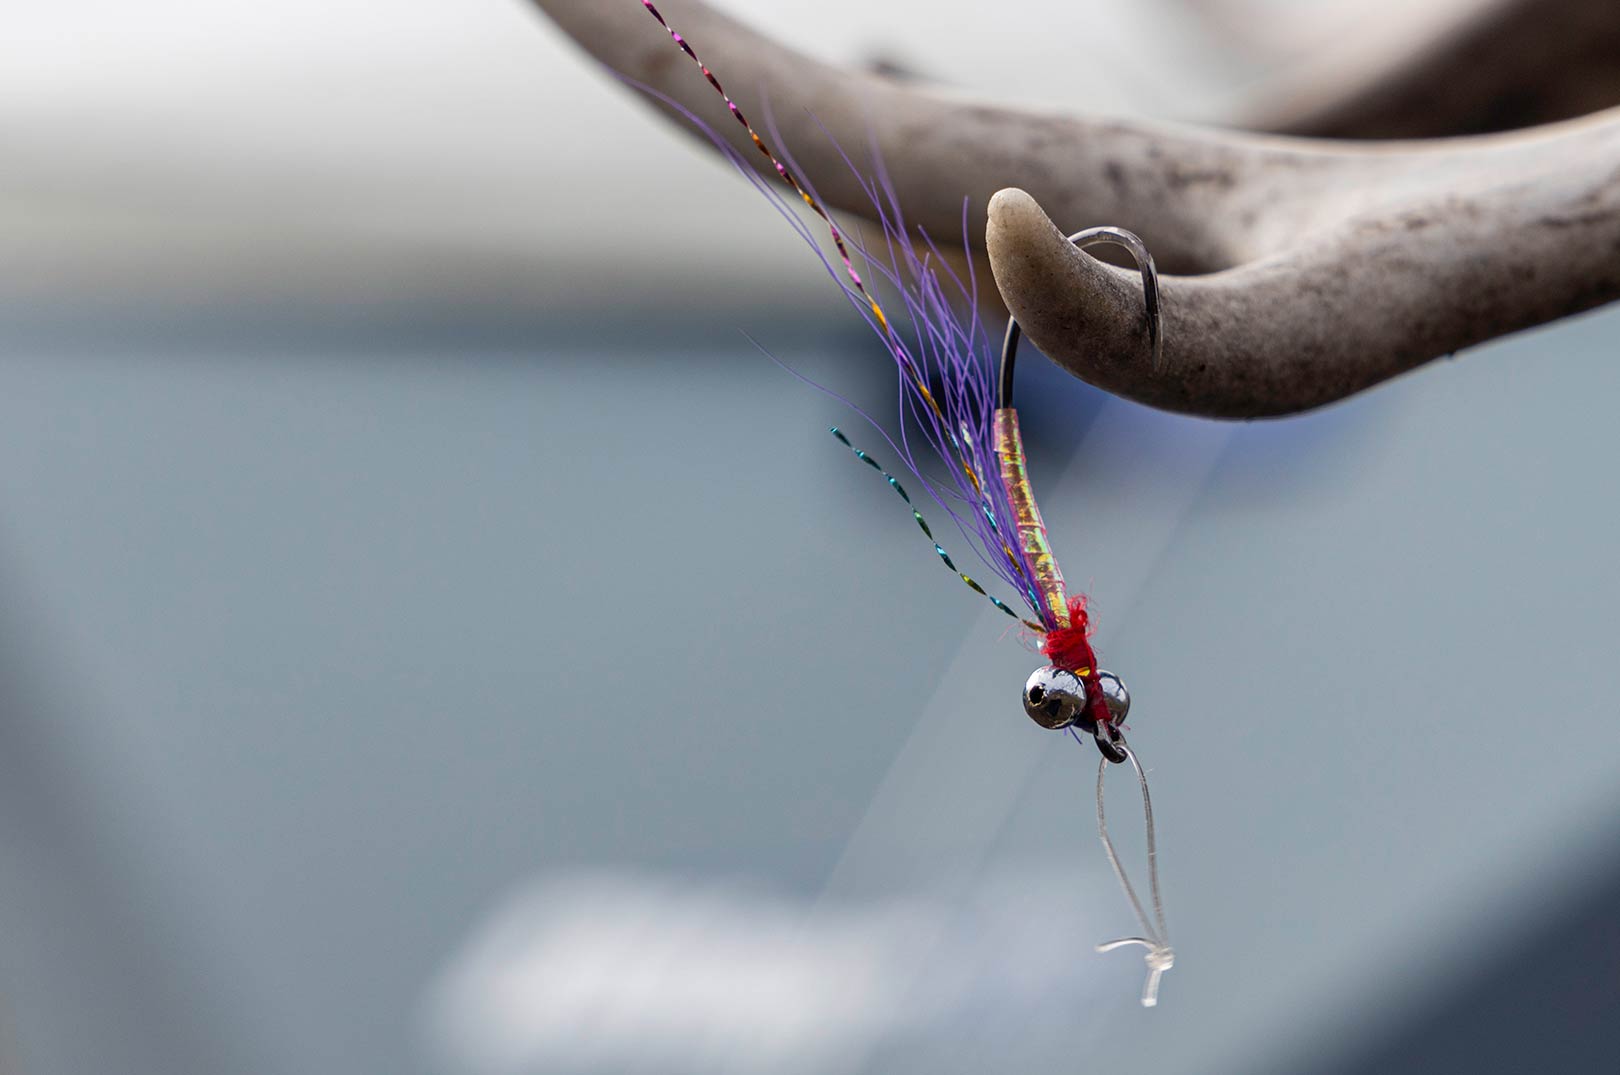 Five Hair Fly er en af de bedste fluer til fiskeriet efter fjeldørred.